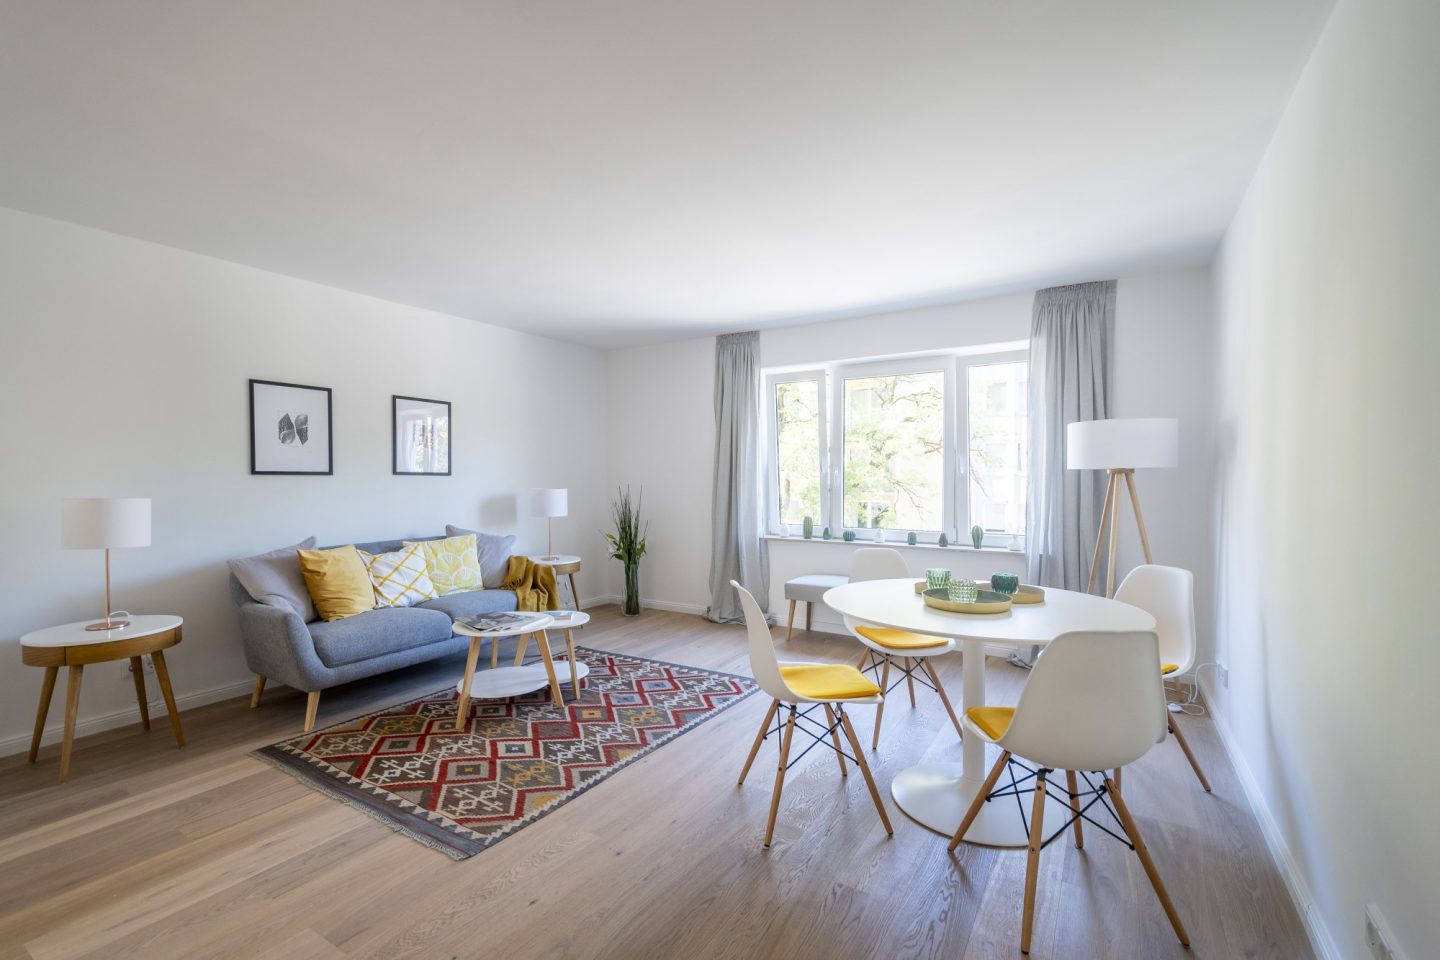 Immobilienfotografie | Home Staging | vorher-nachher | München | Offenblende